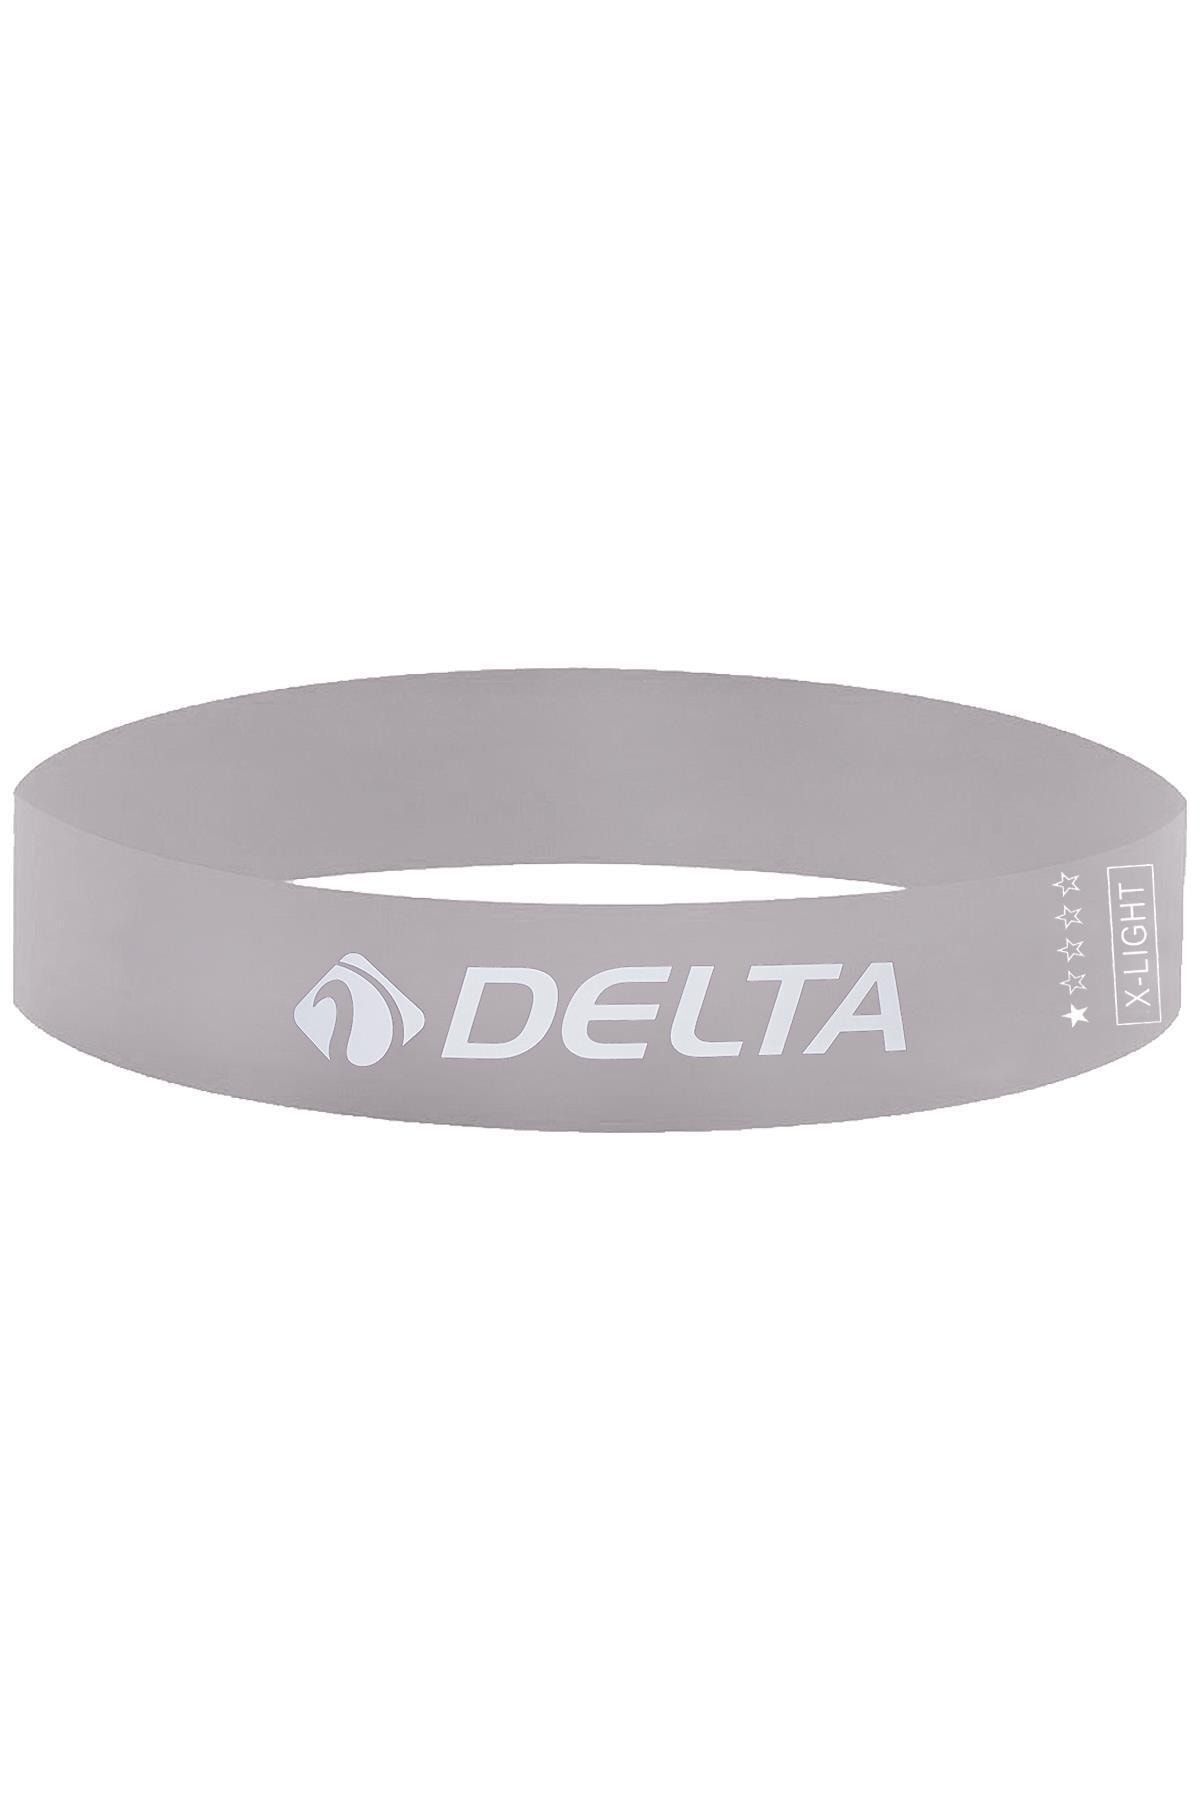 Delta Latex Ekstra Hafif Sert Aerobik Pilates Direnç Egzersiz Bandı Squat Lastiği (Uç Kısmı Kapalı)